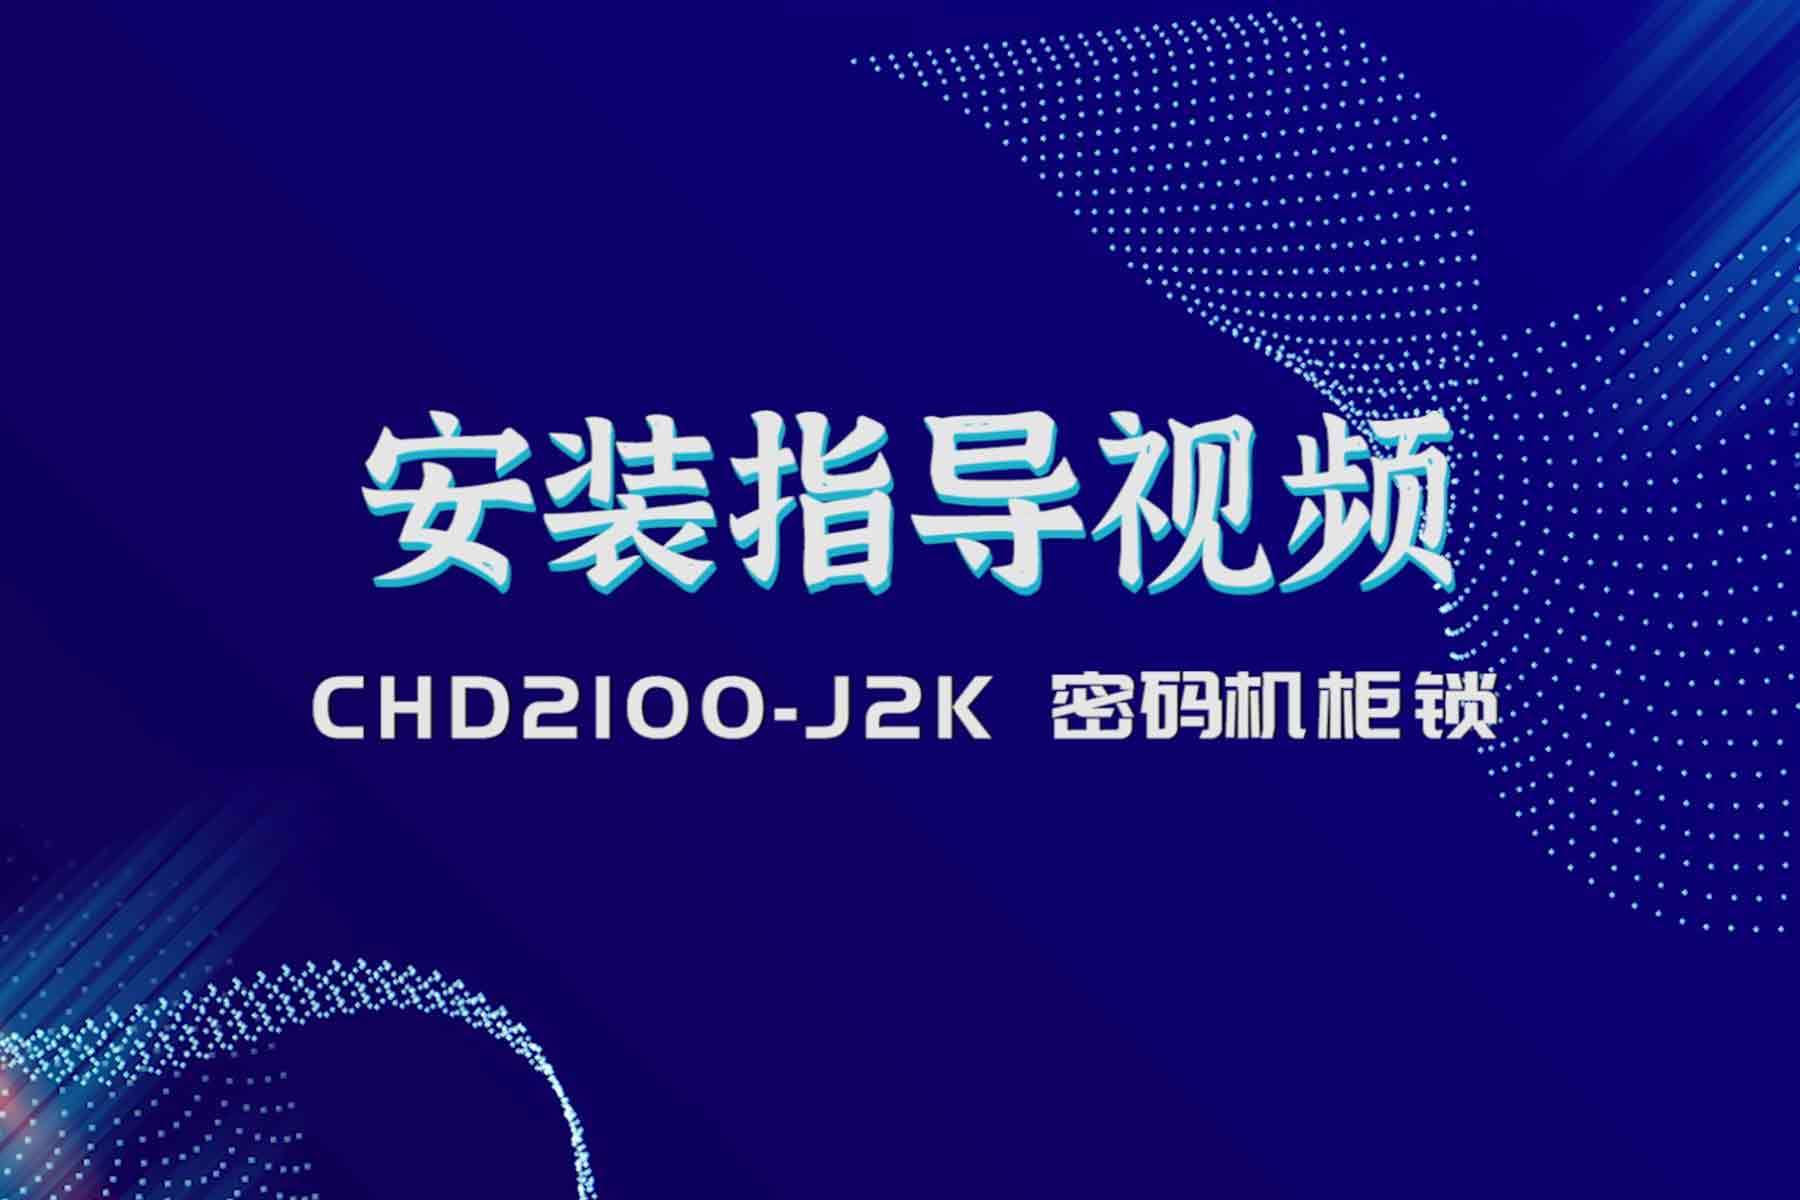 2100-J2K装置指点视频